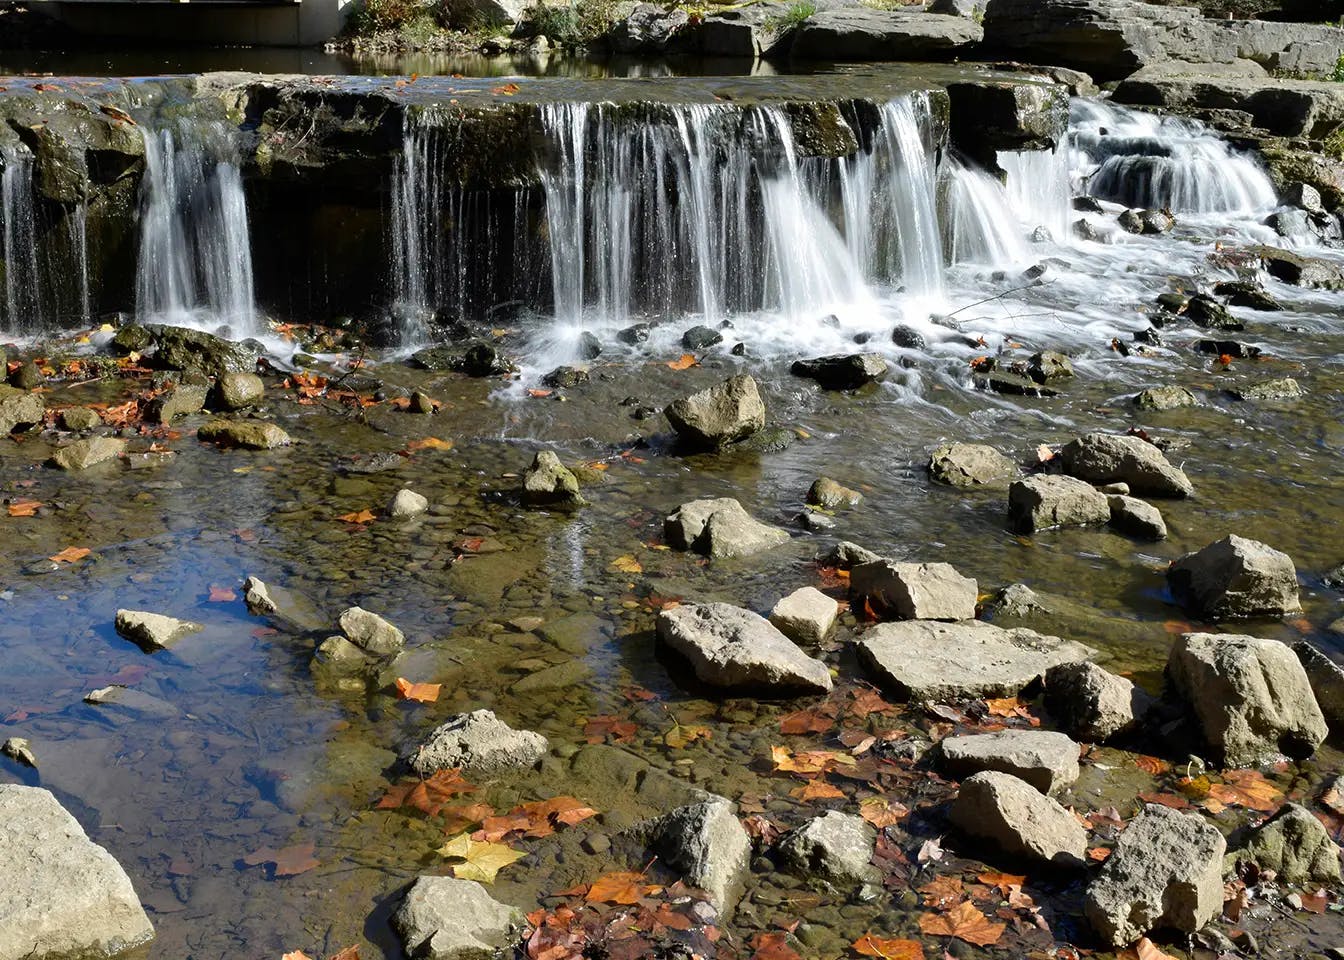 A waterfall in the fall season.